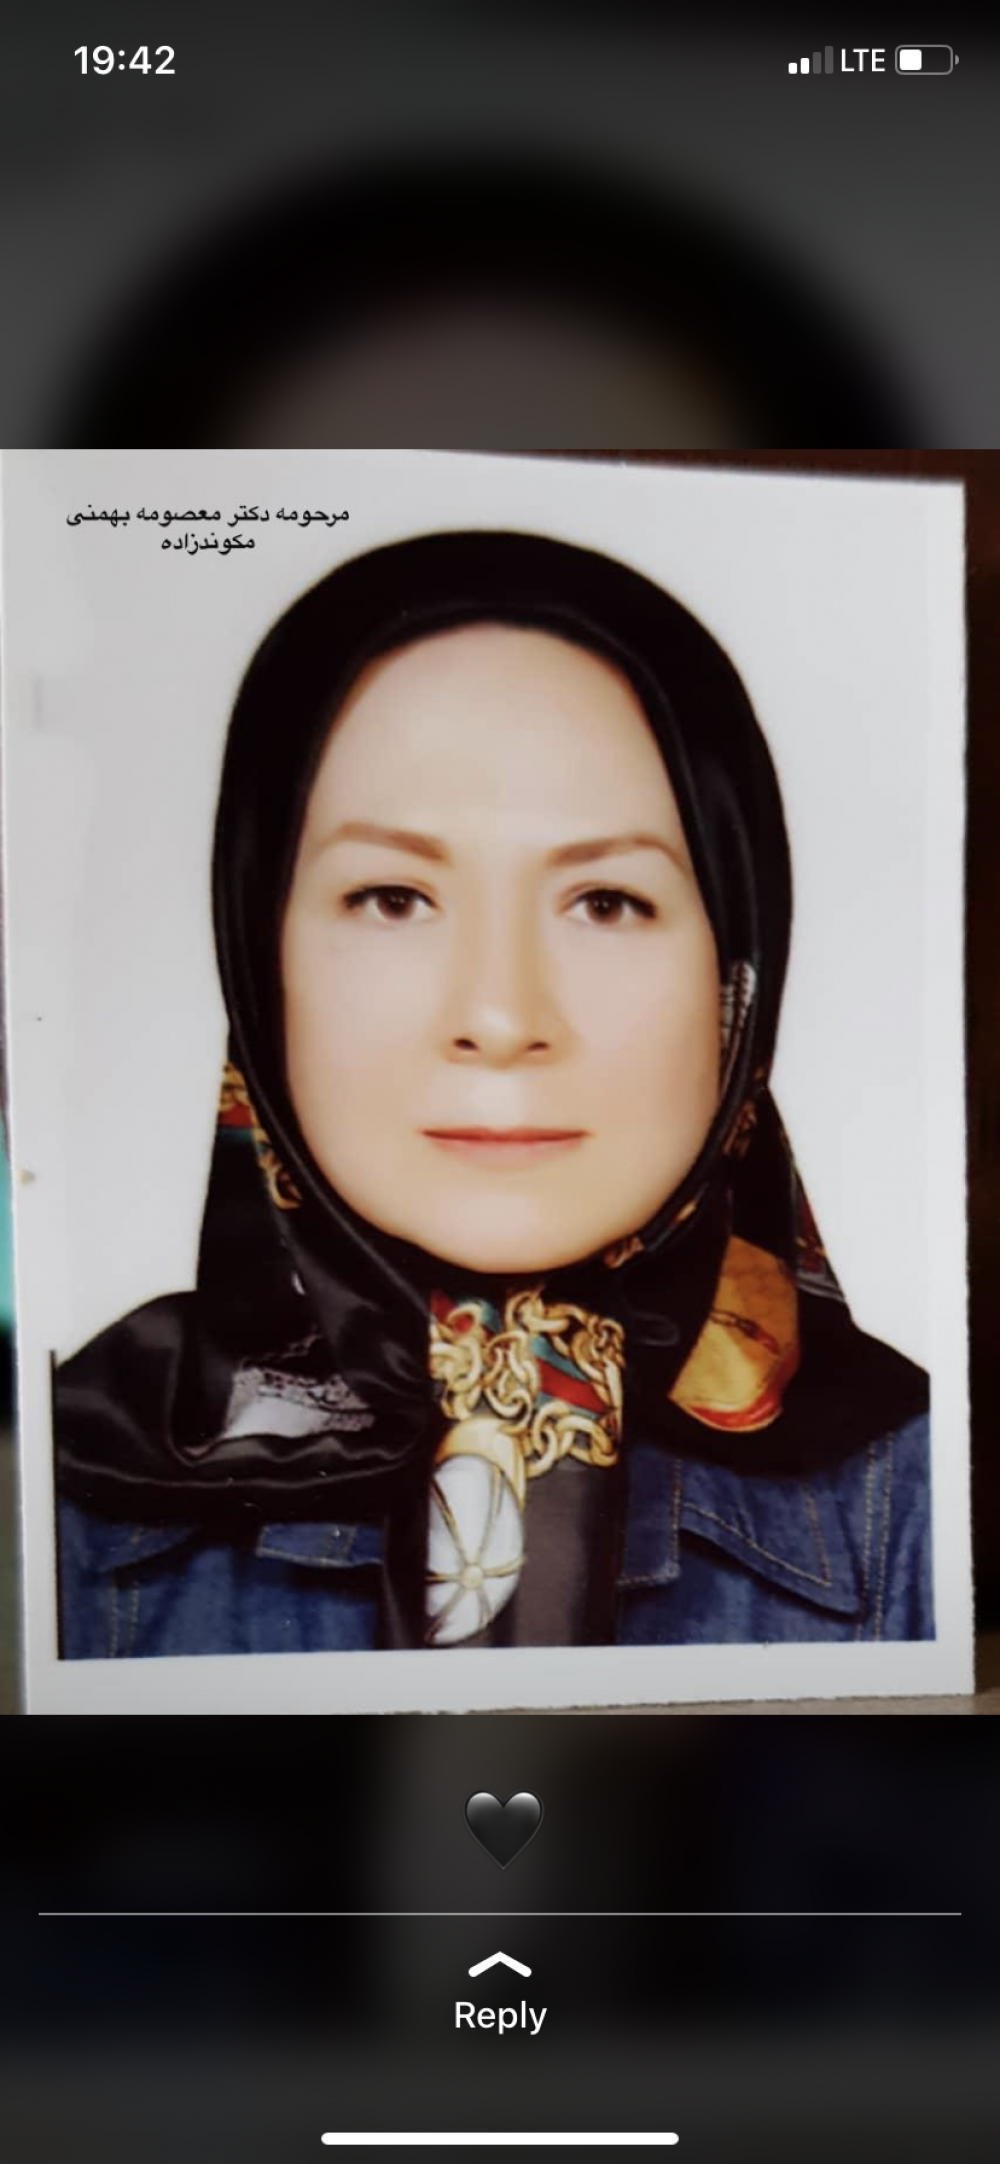  معصومه بهمنی مکوندزاده